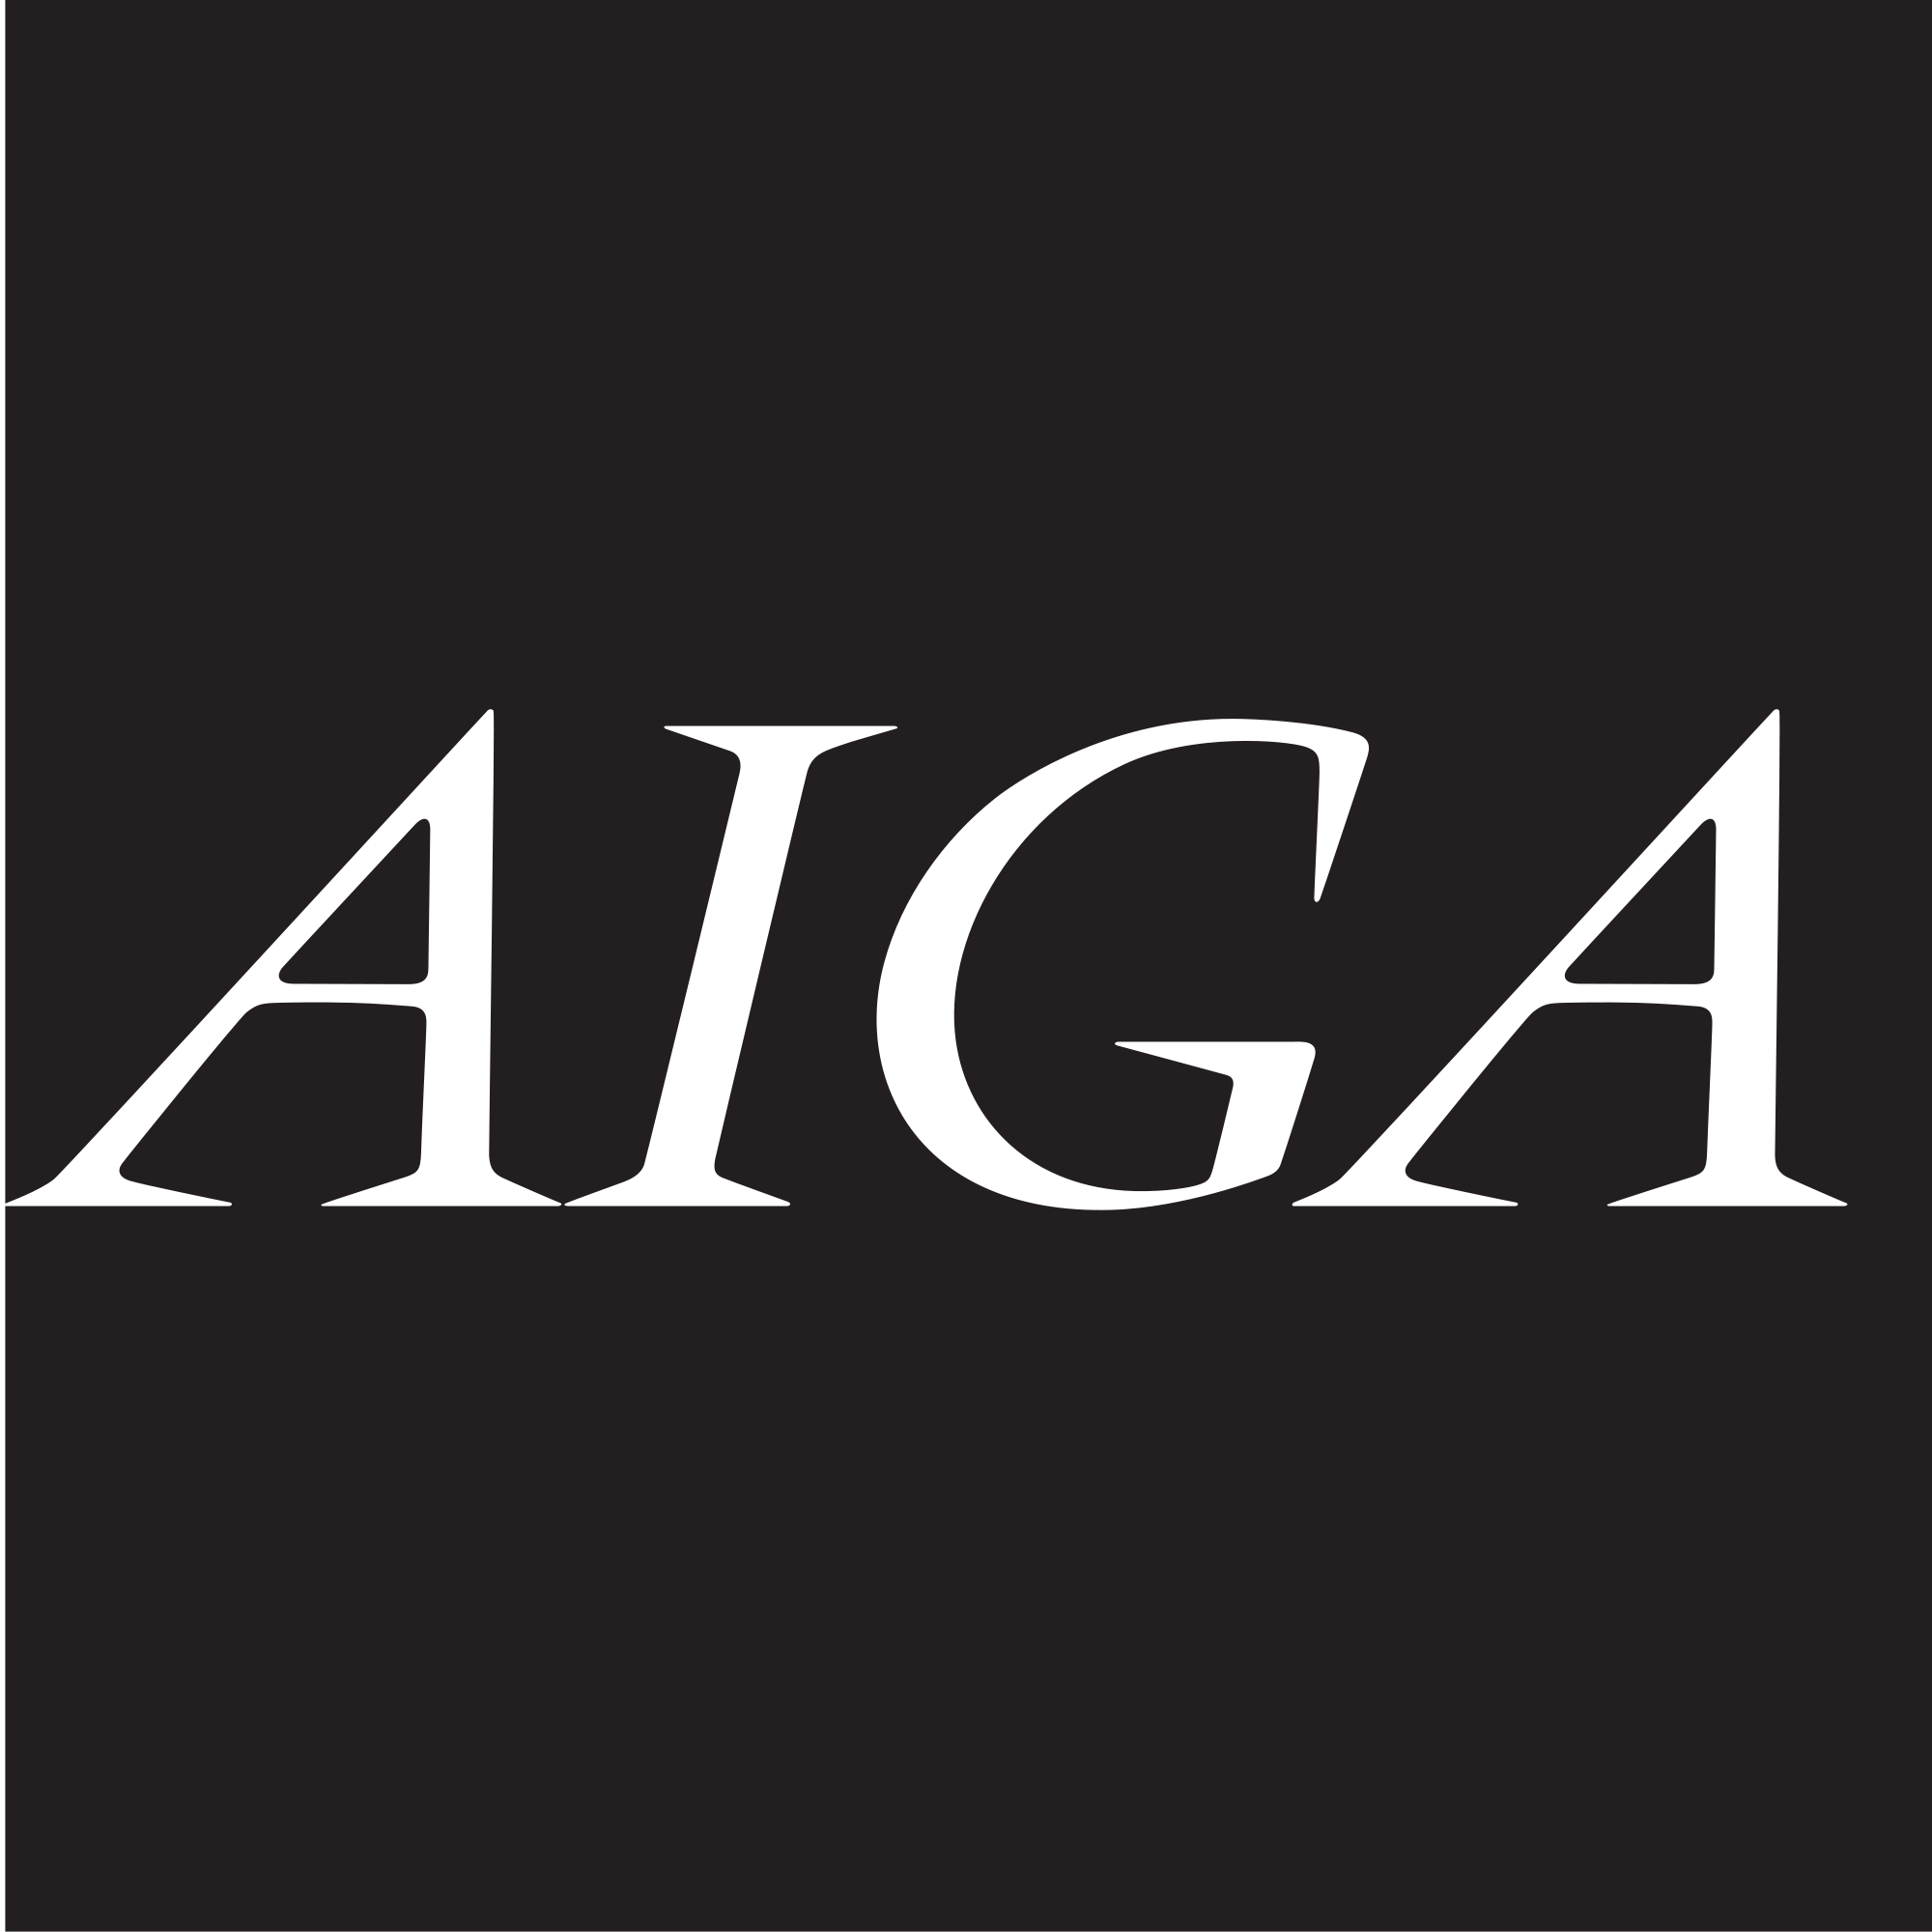 American Institute of Graphic Arts (AIGA)Logo